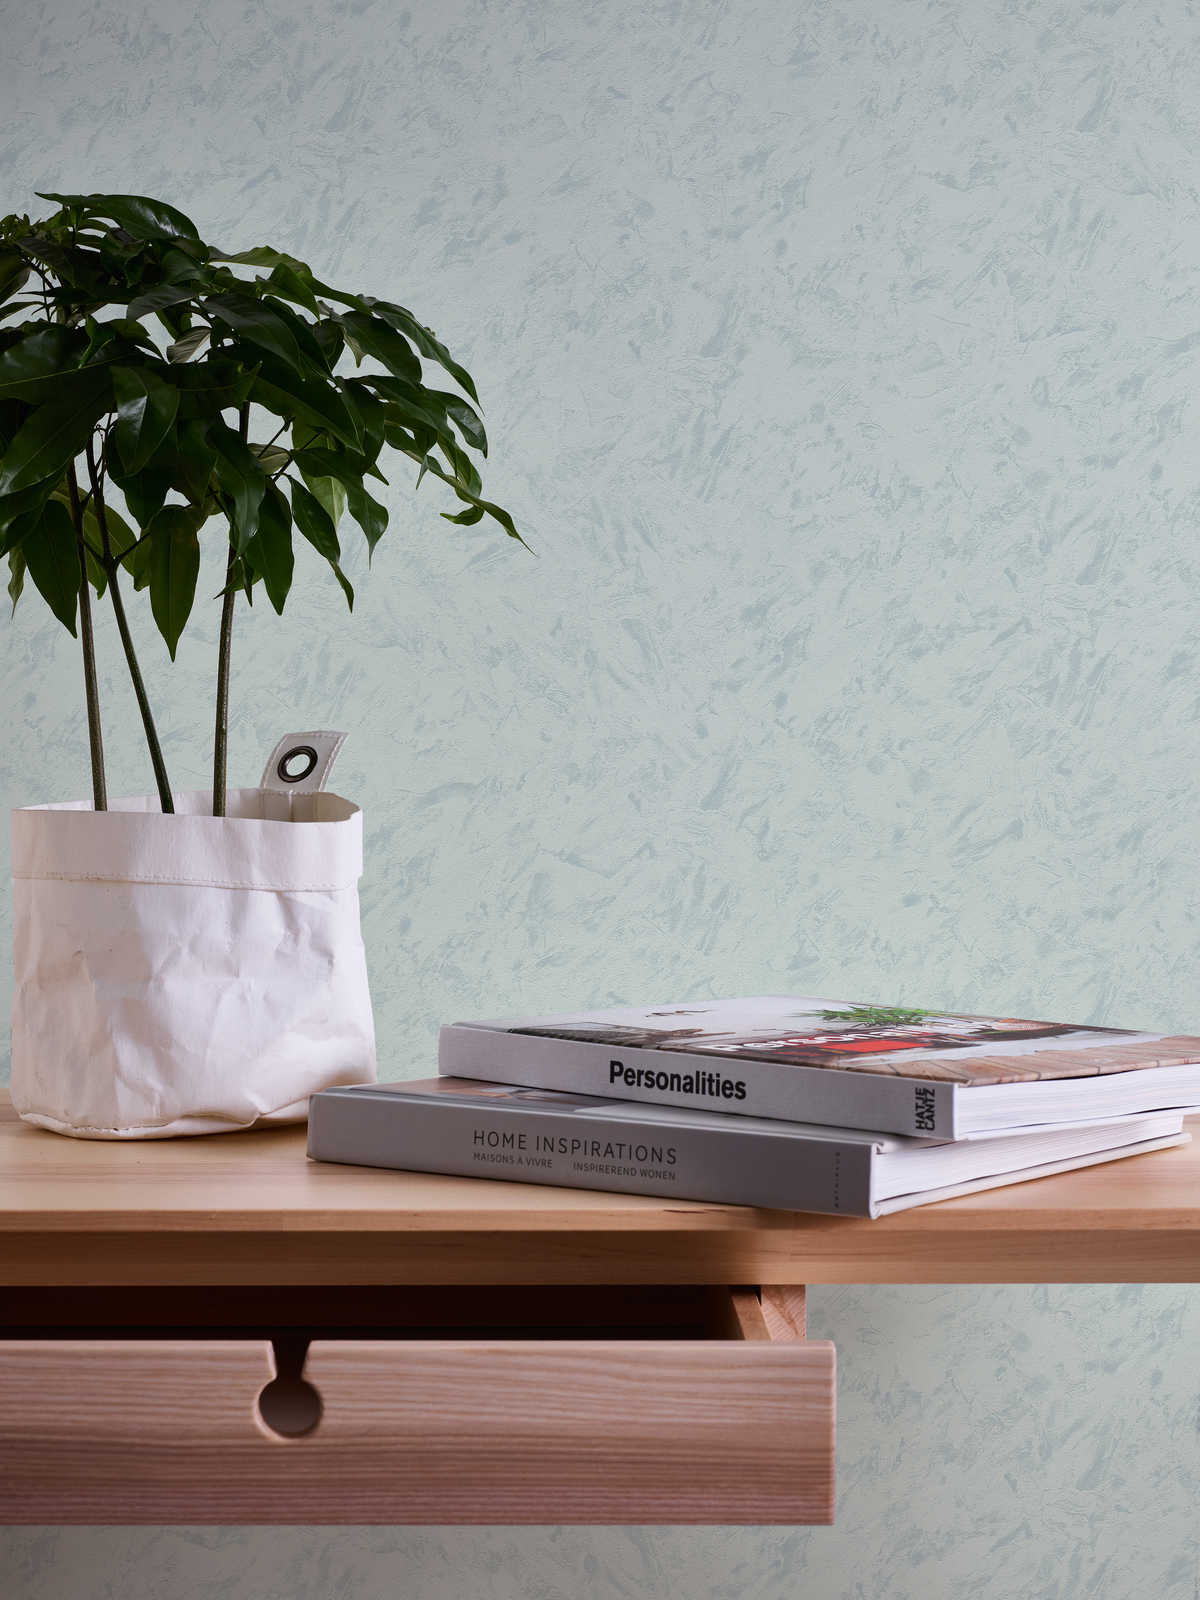             Plain pattern wallpaper wipe clean look - green
        